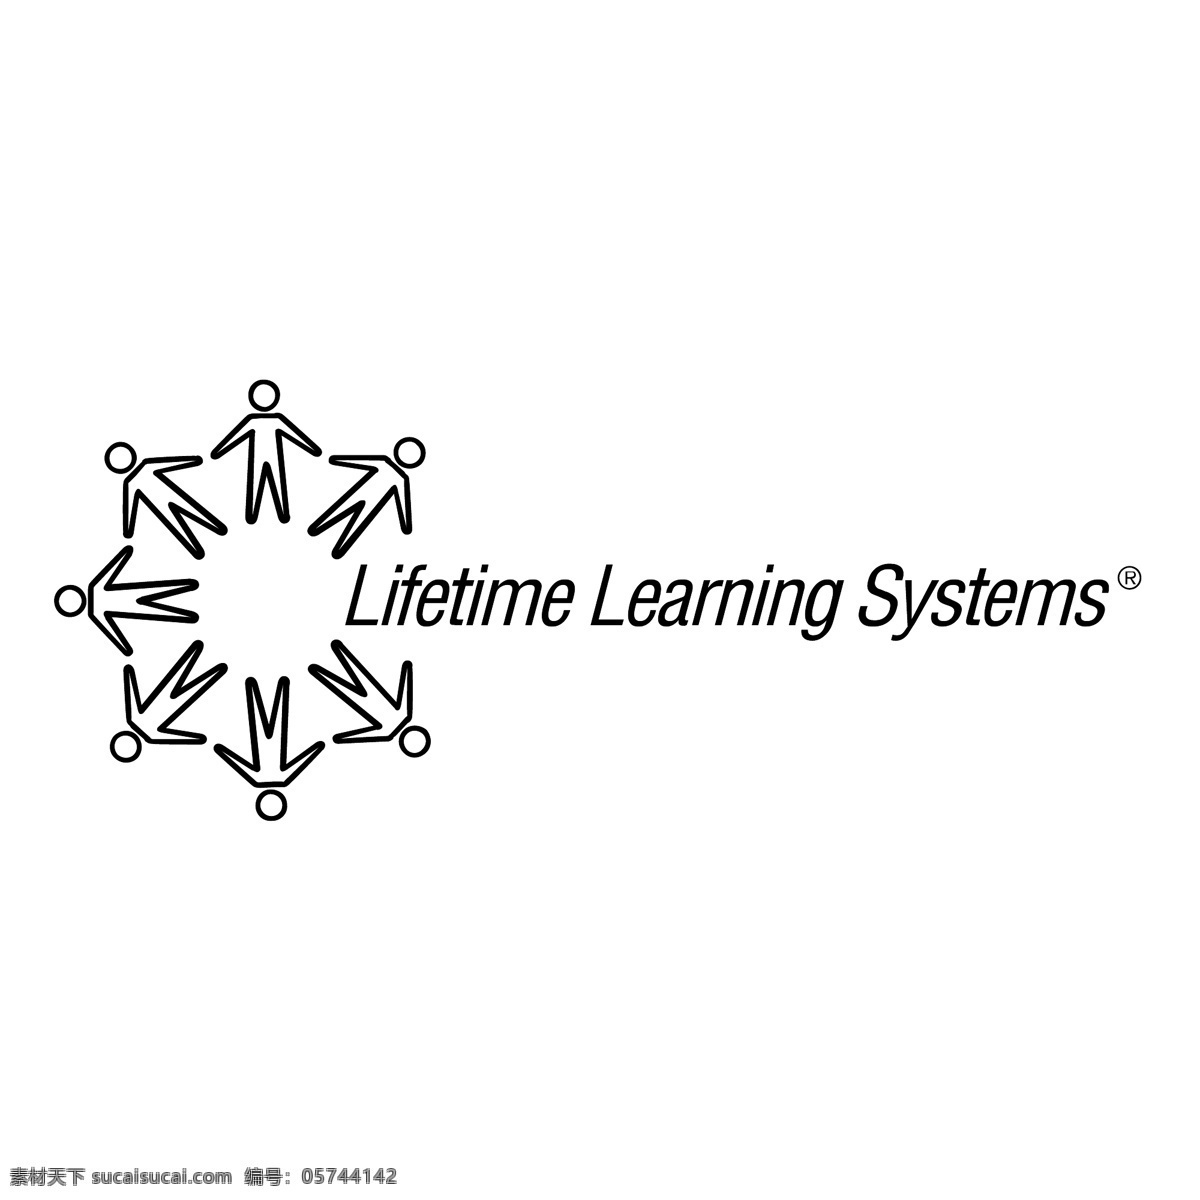 终身 学习 体系 免费 标志 学习系统 psd源文件 logo设计